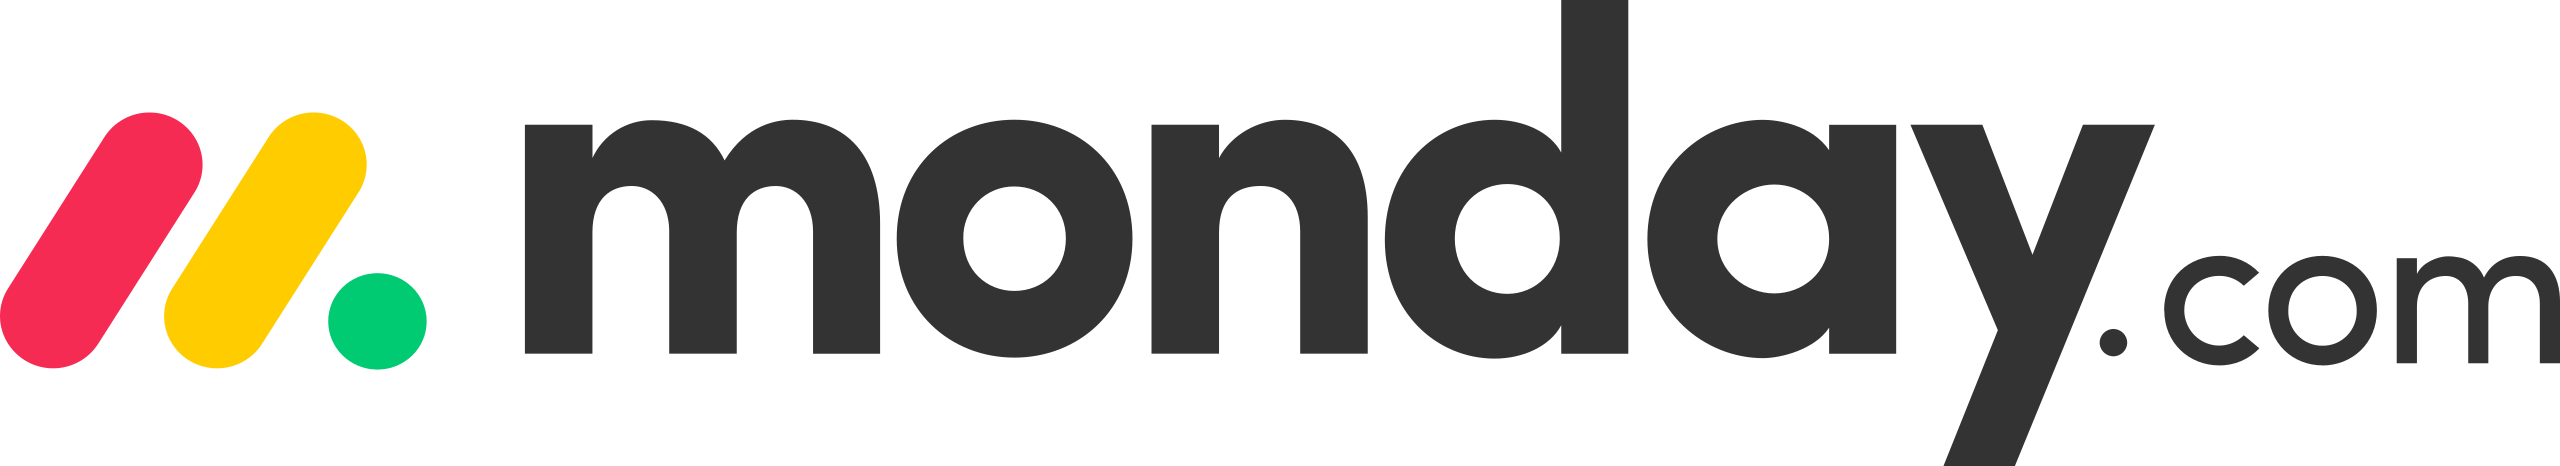 Monday.com logo